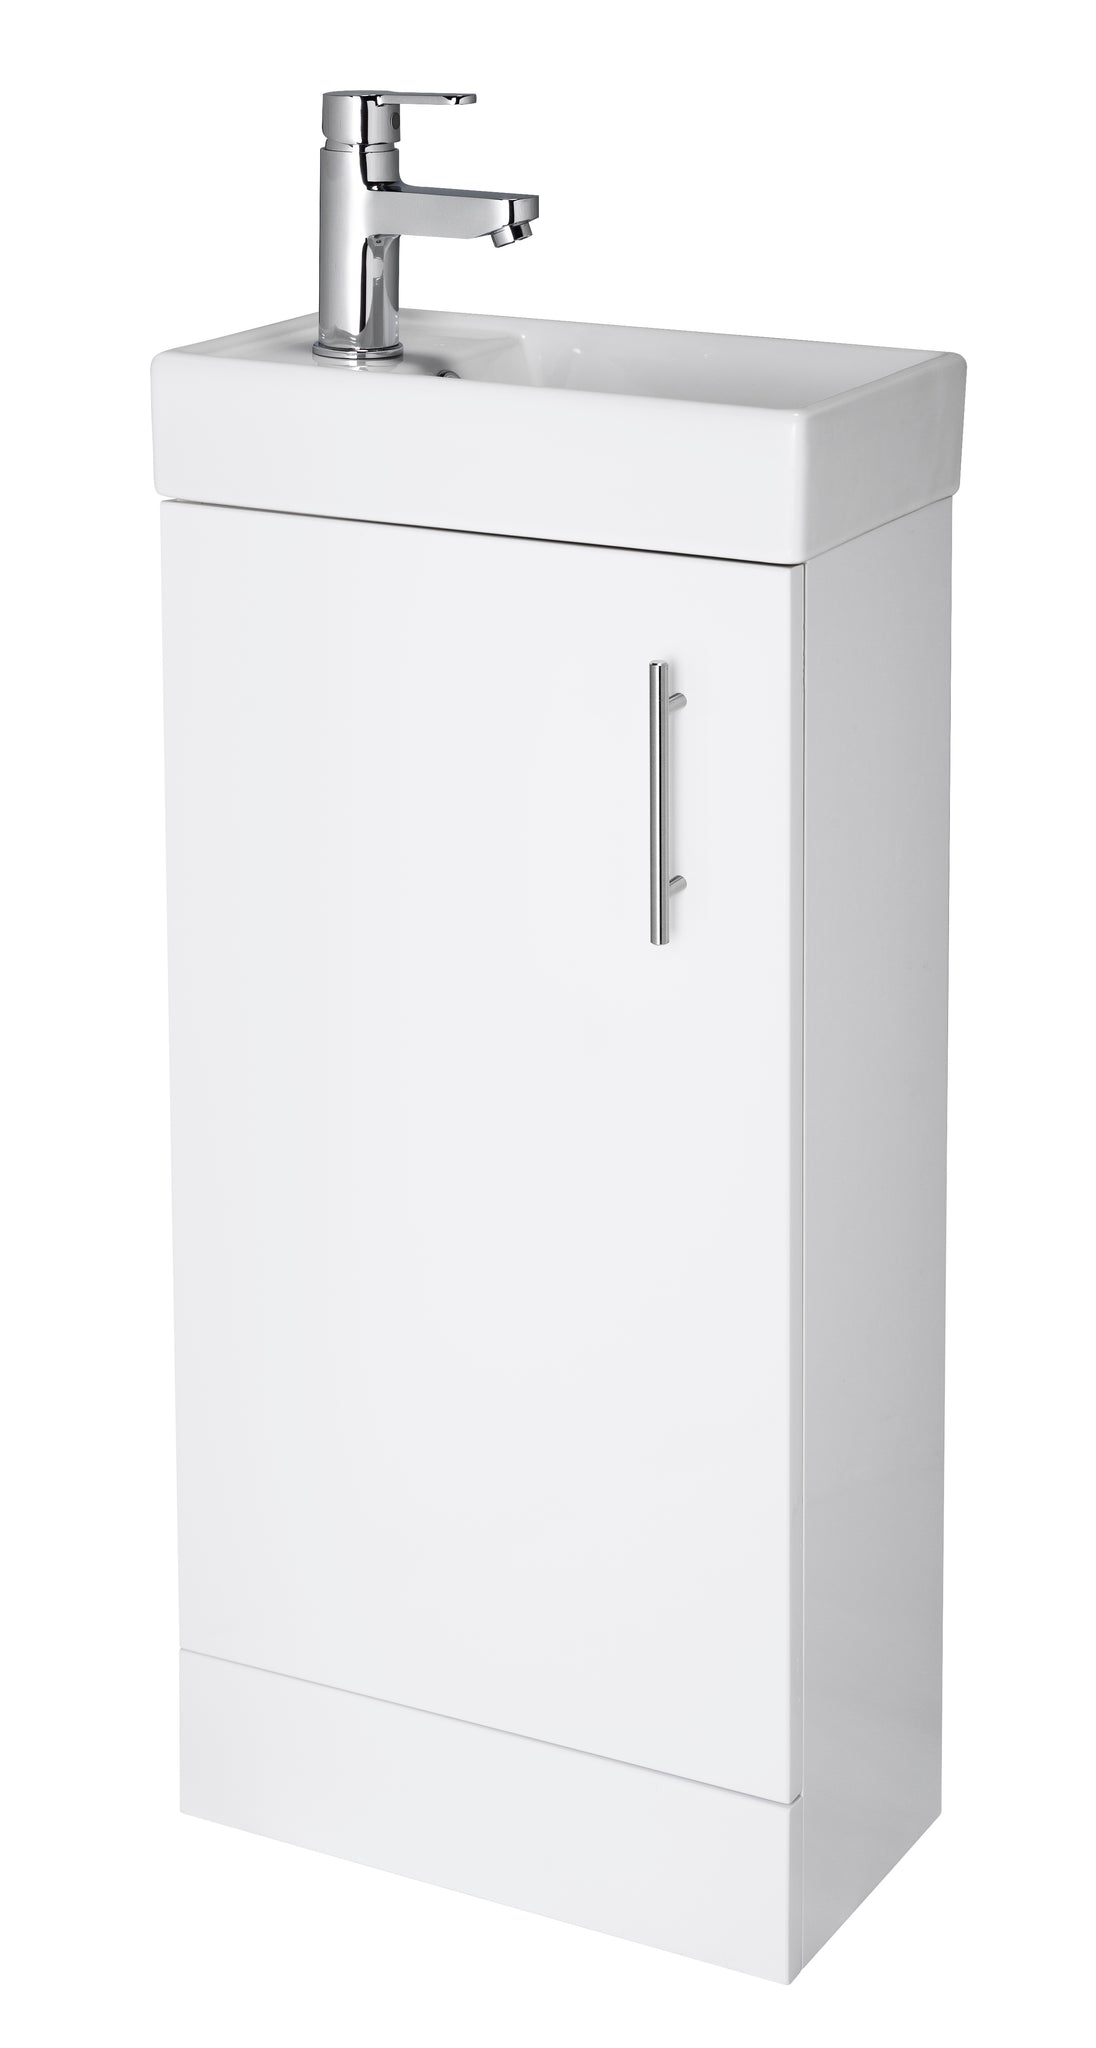 Vault 400mm Floor Standing Cabinet & Basin - Gloss White